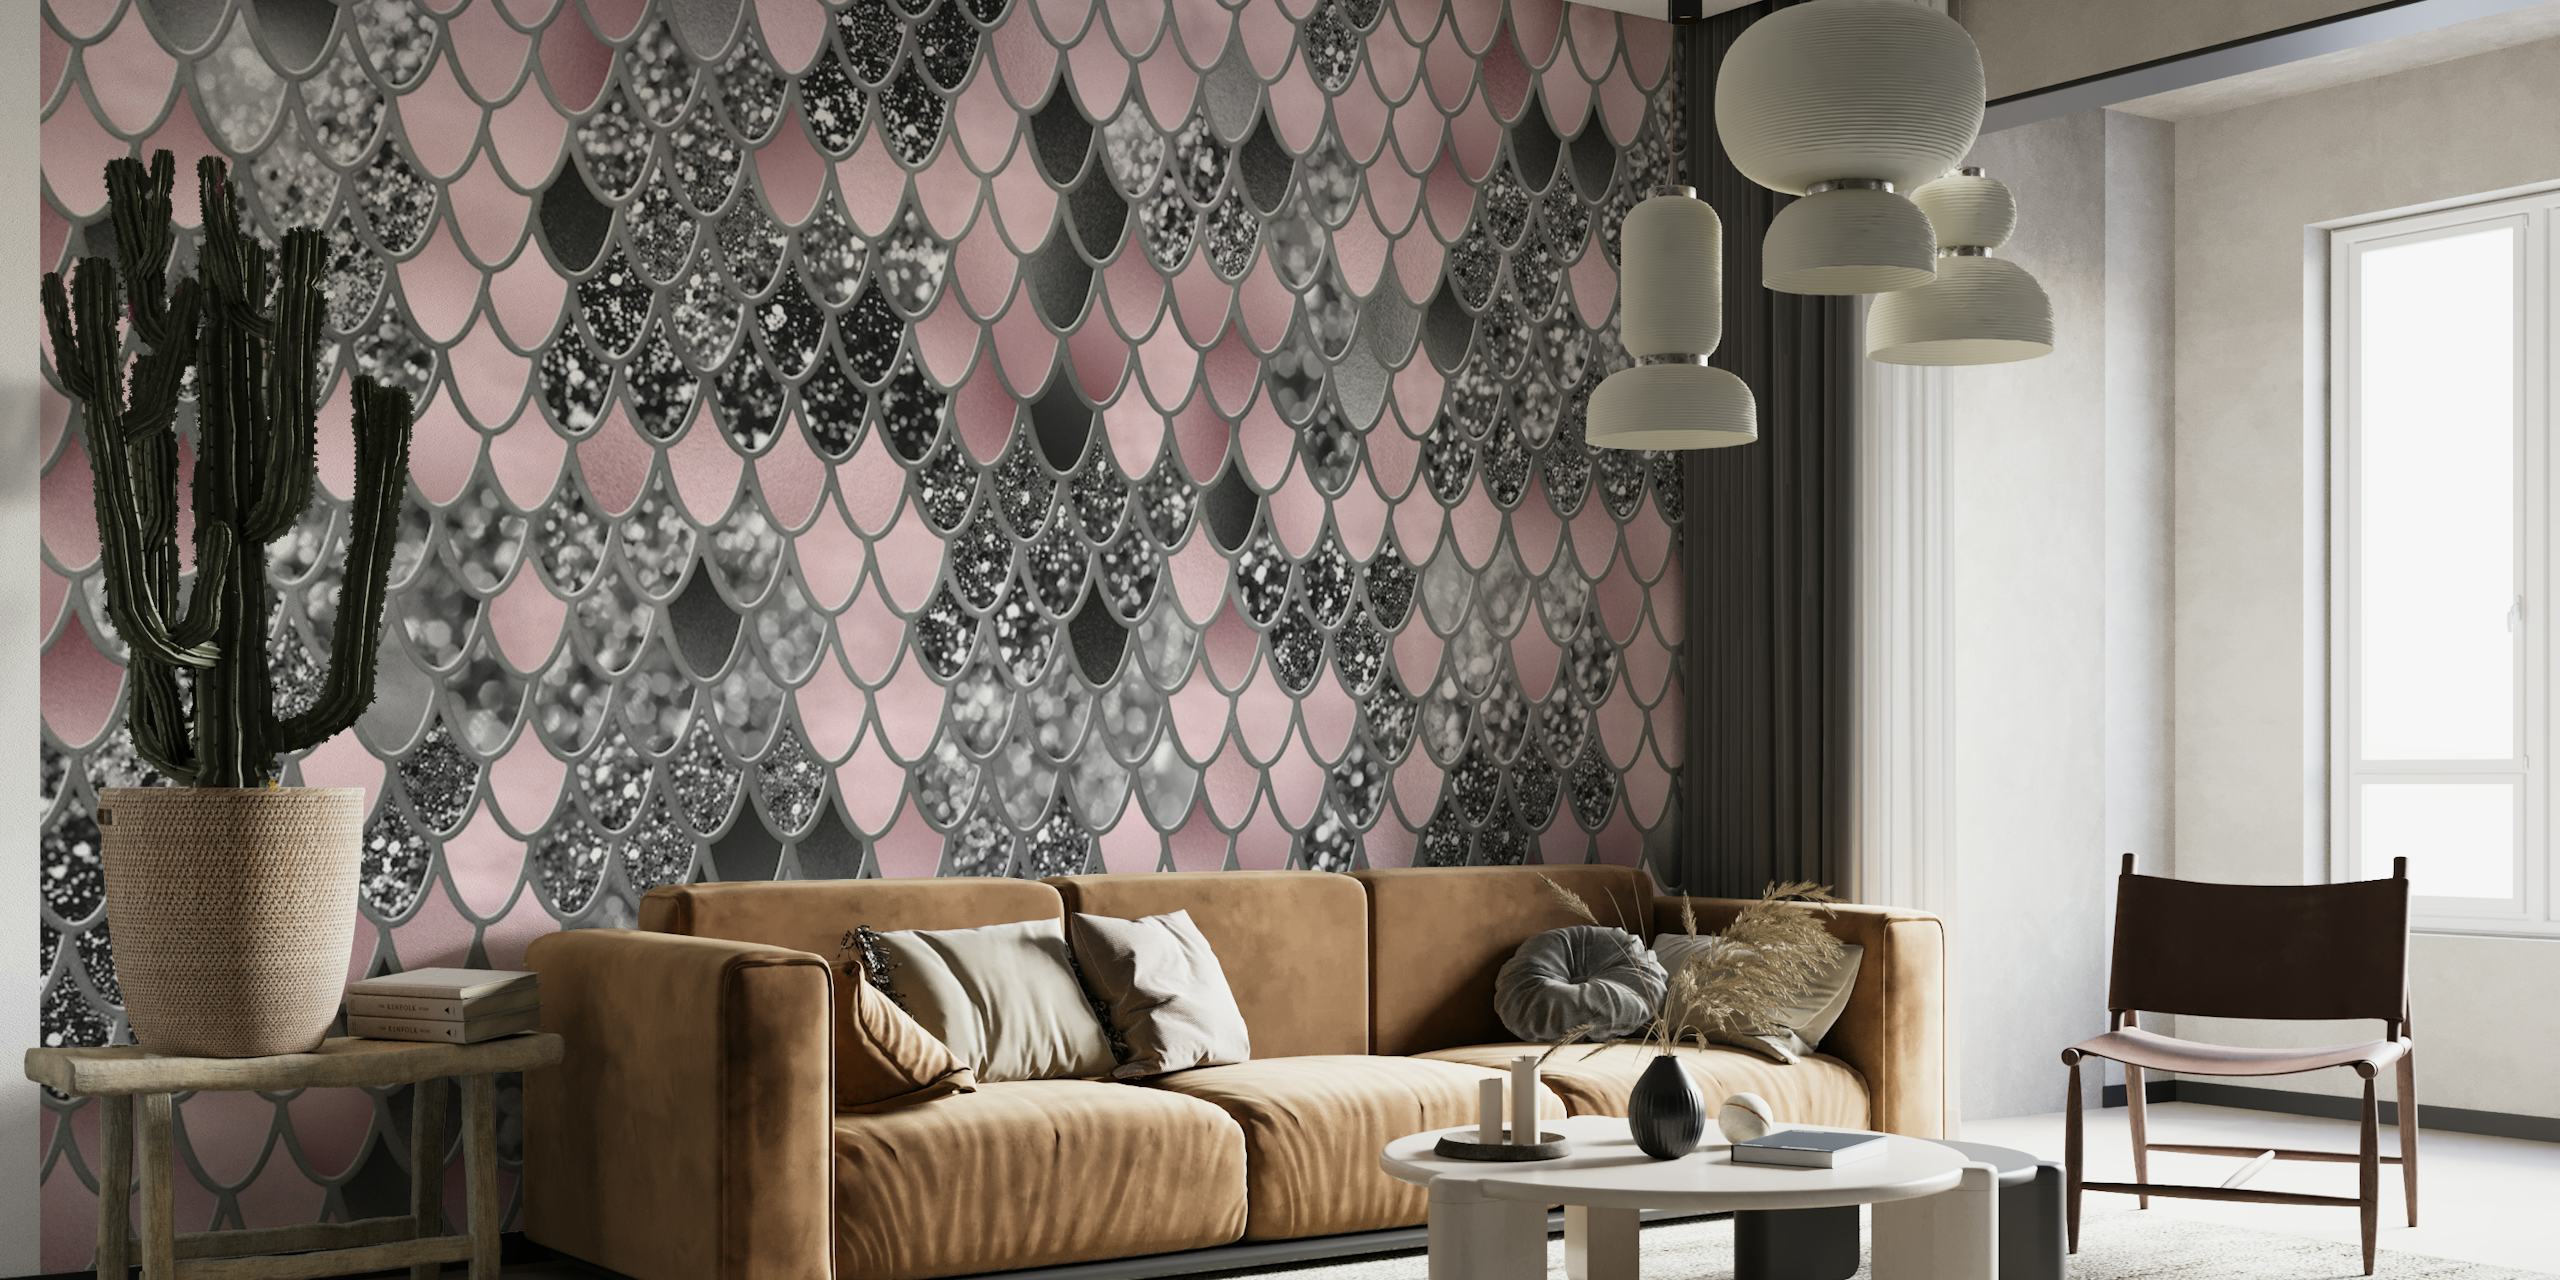 Blozen roze zilver zwart zeemeermin schalen glamoureuze muur muurschildering